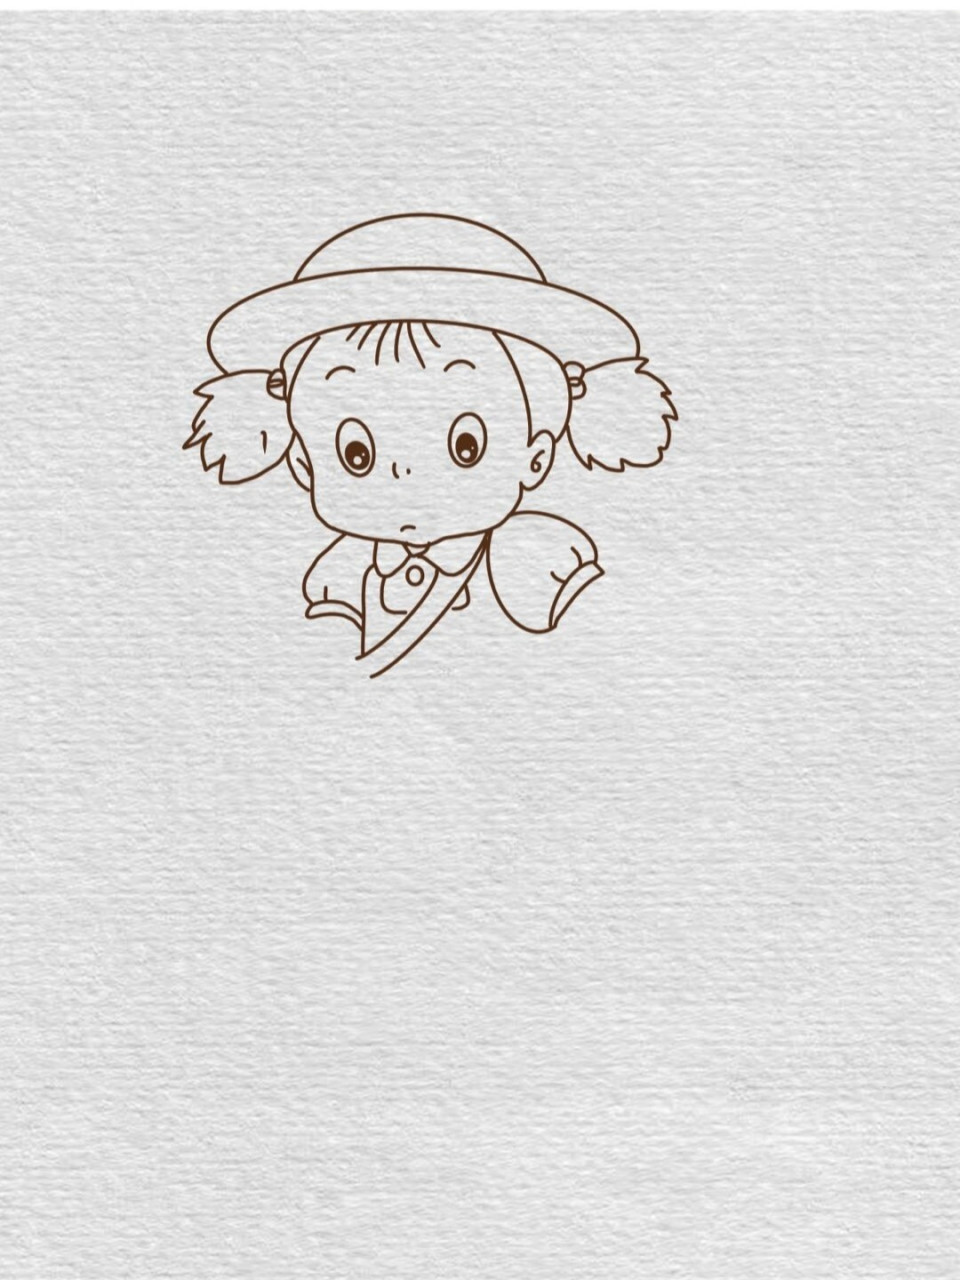 宫崎骏龙猫电影人物简笔画教程(100/26) 无文案,喜欢的留个赞哦 比心